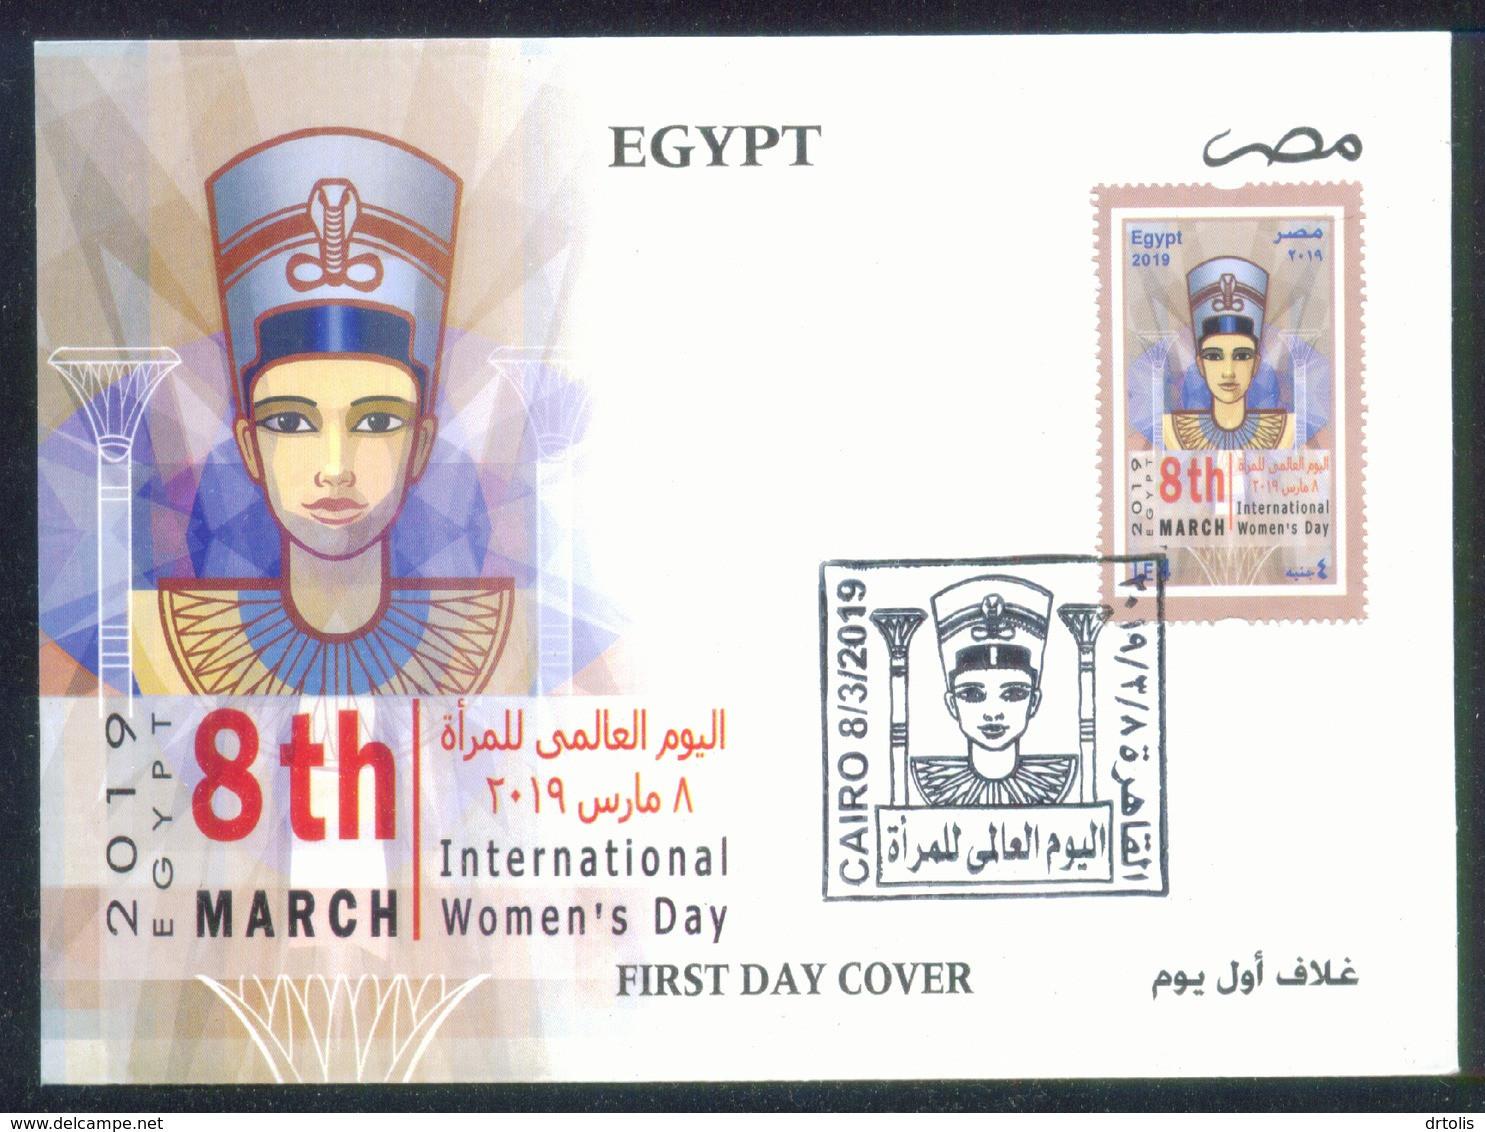 EGYPT / 2019 / INTL. WOMEN'S DAY / UN / EGYPTOLOGY / ARCHEOLOGY / FDC - Covers & Documents